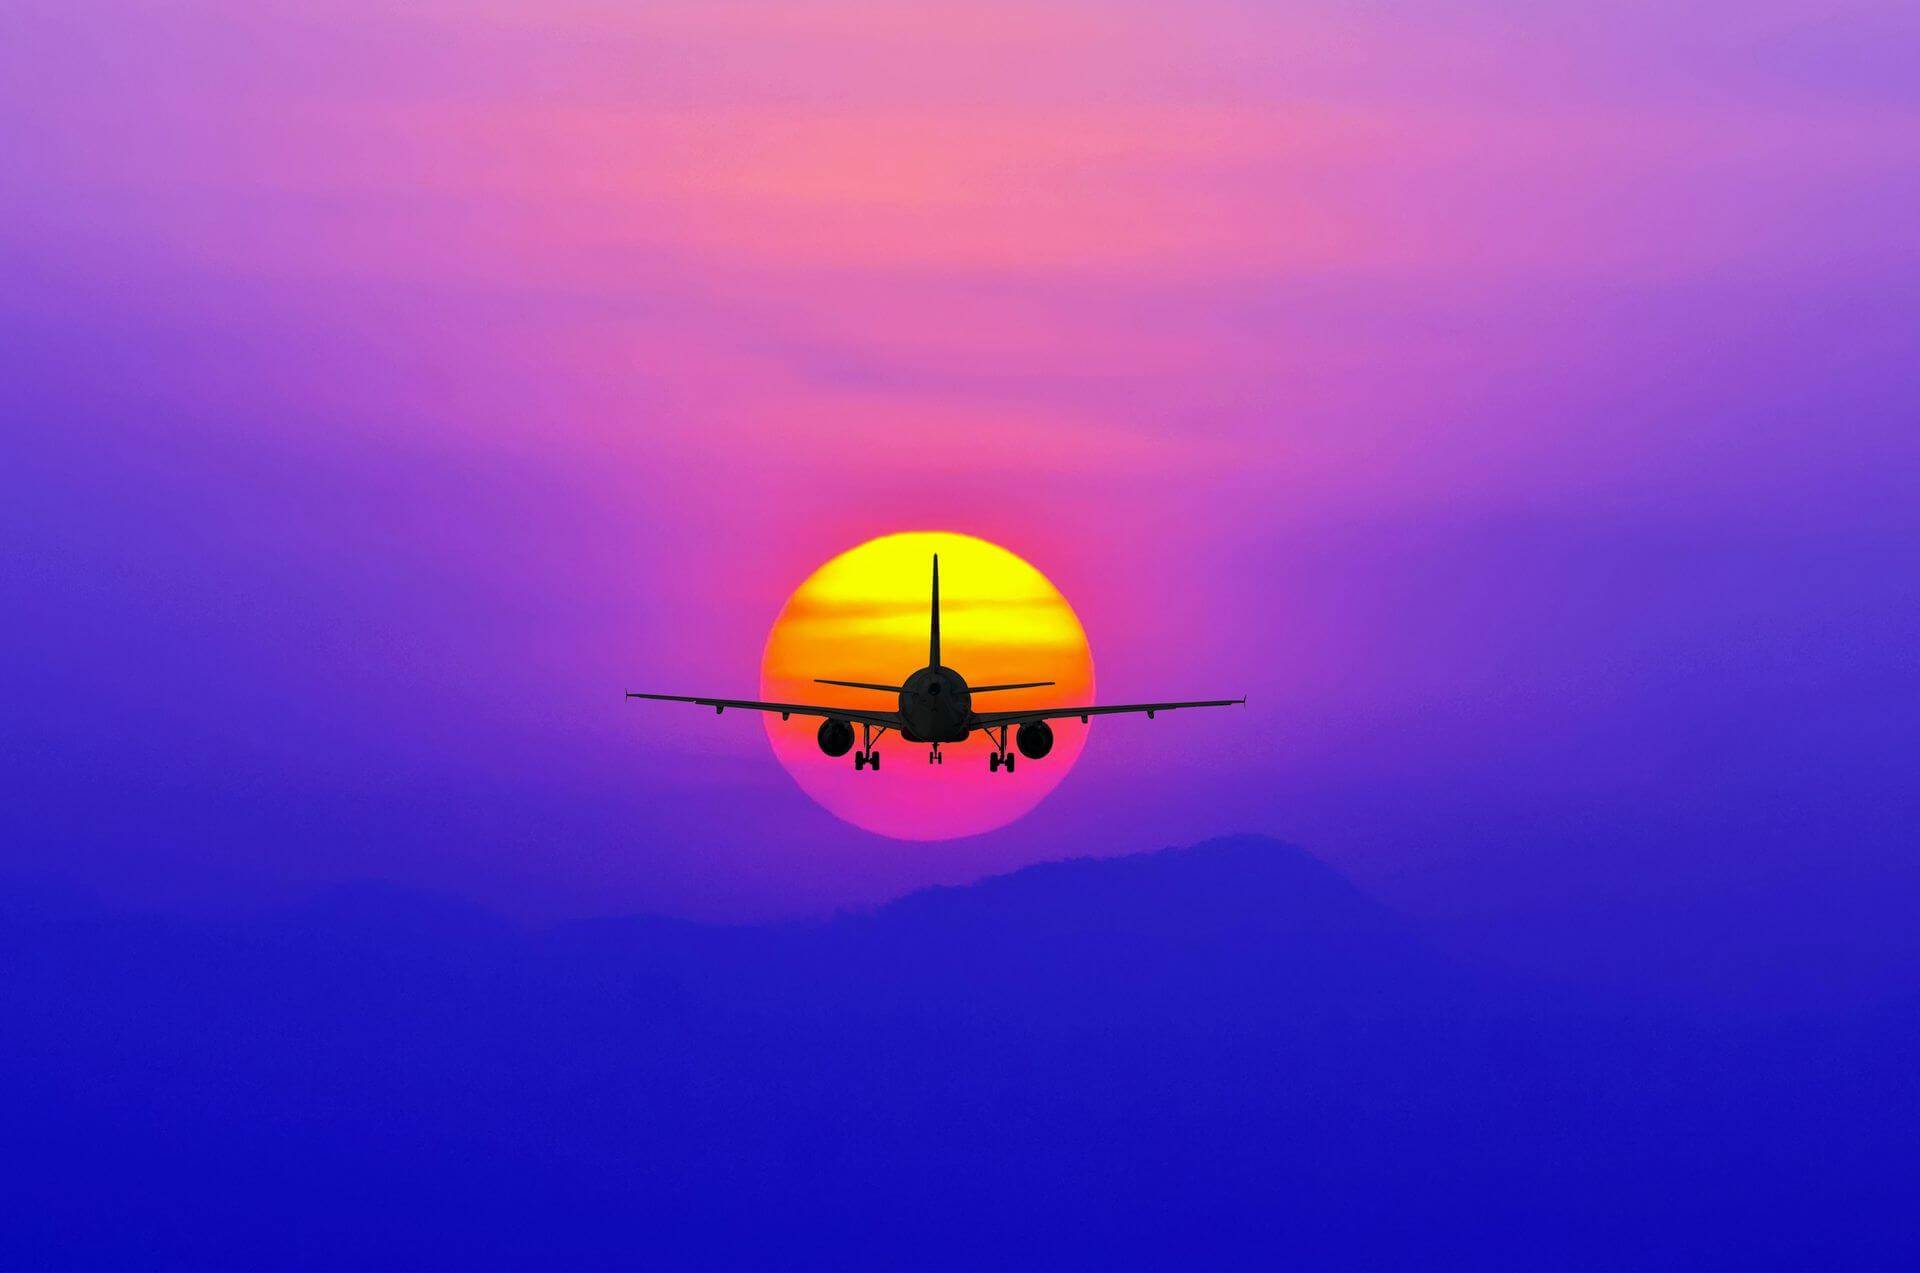 Samolot lecący w stronę słońca